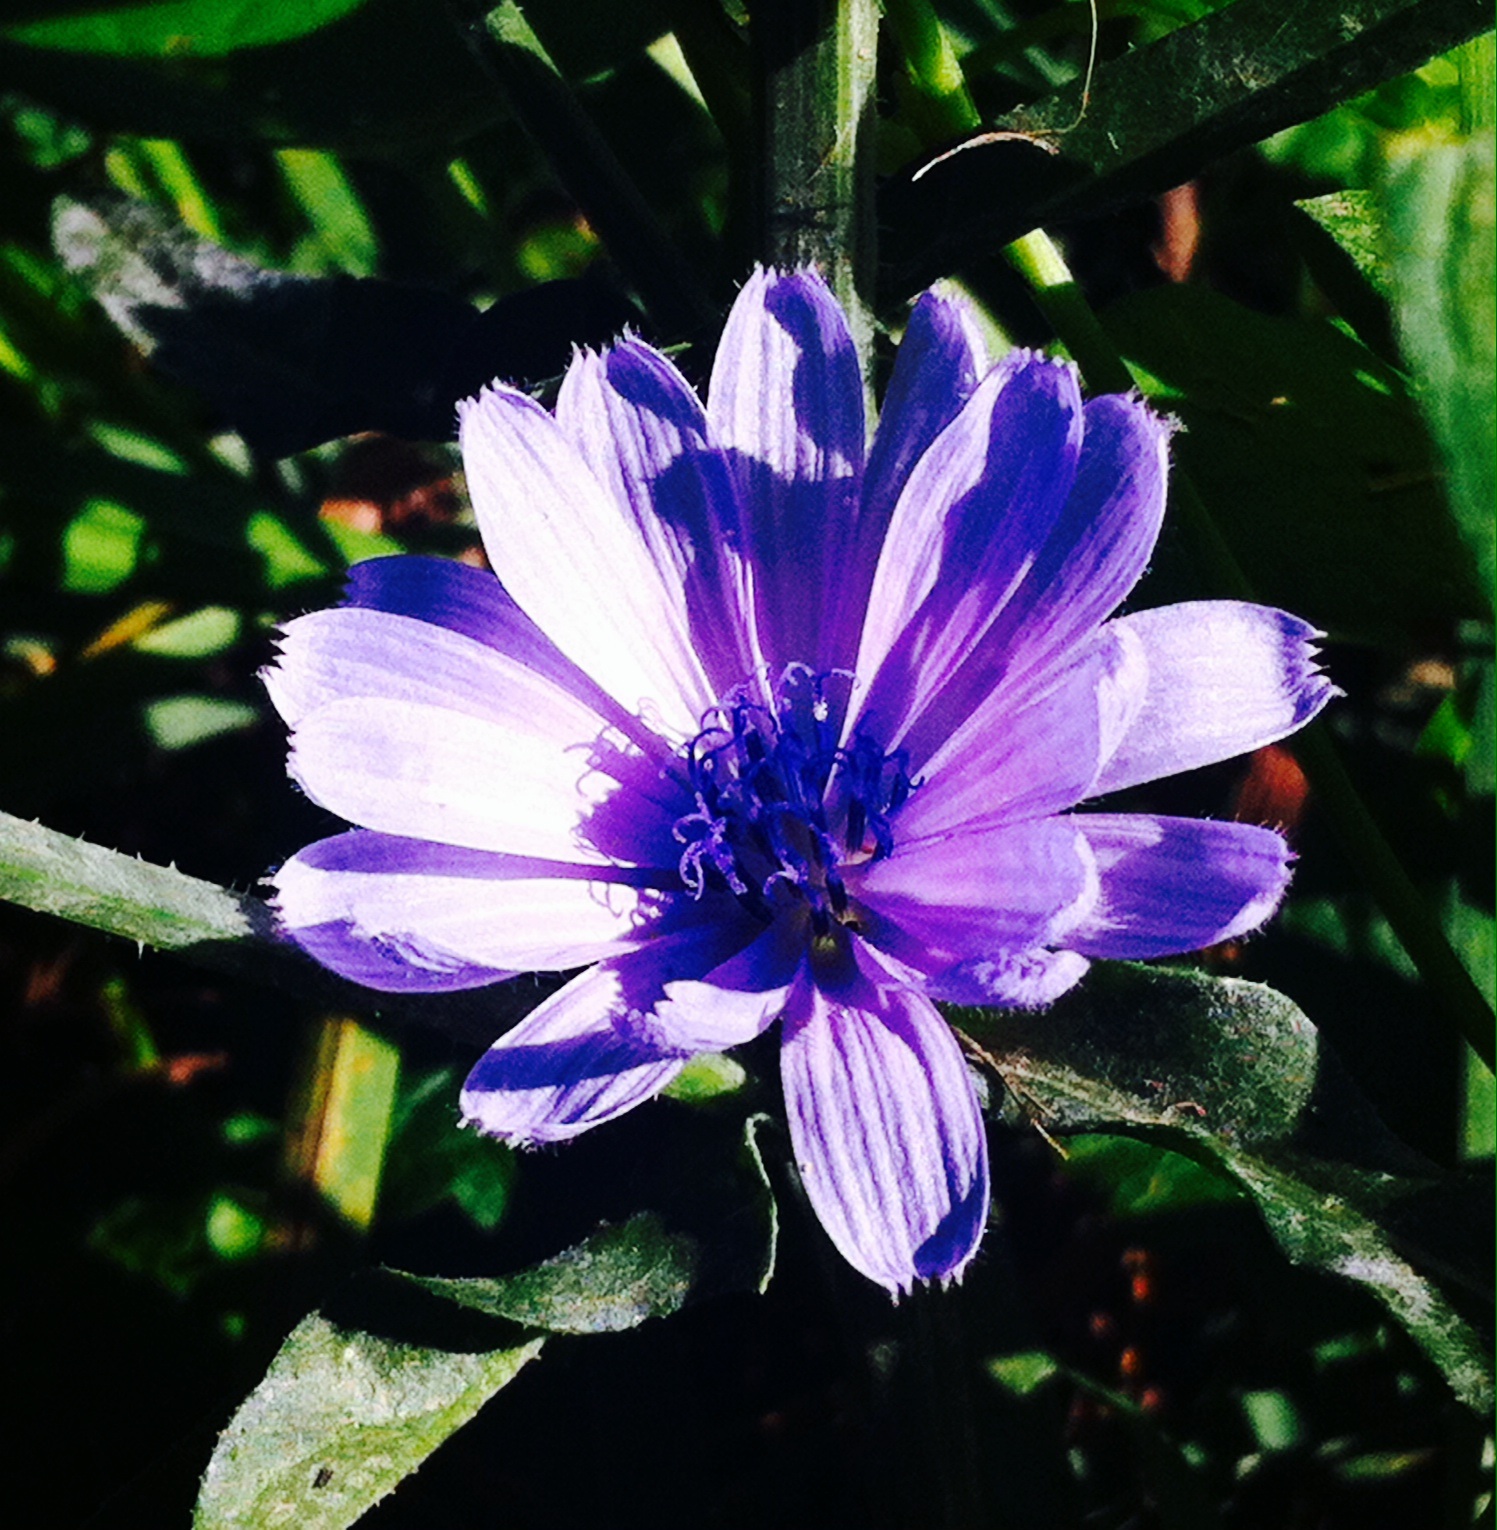 Pretty Purple Flower by m-angel05 on DeviantArt